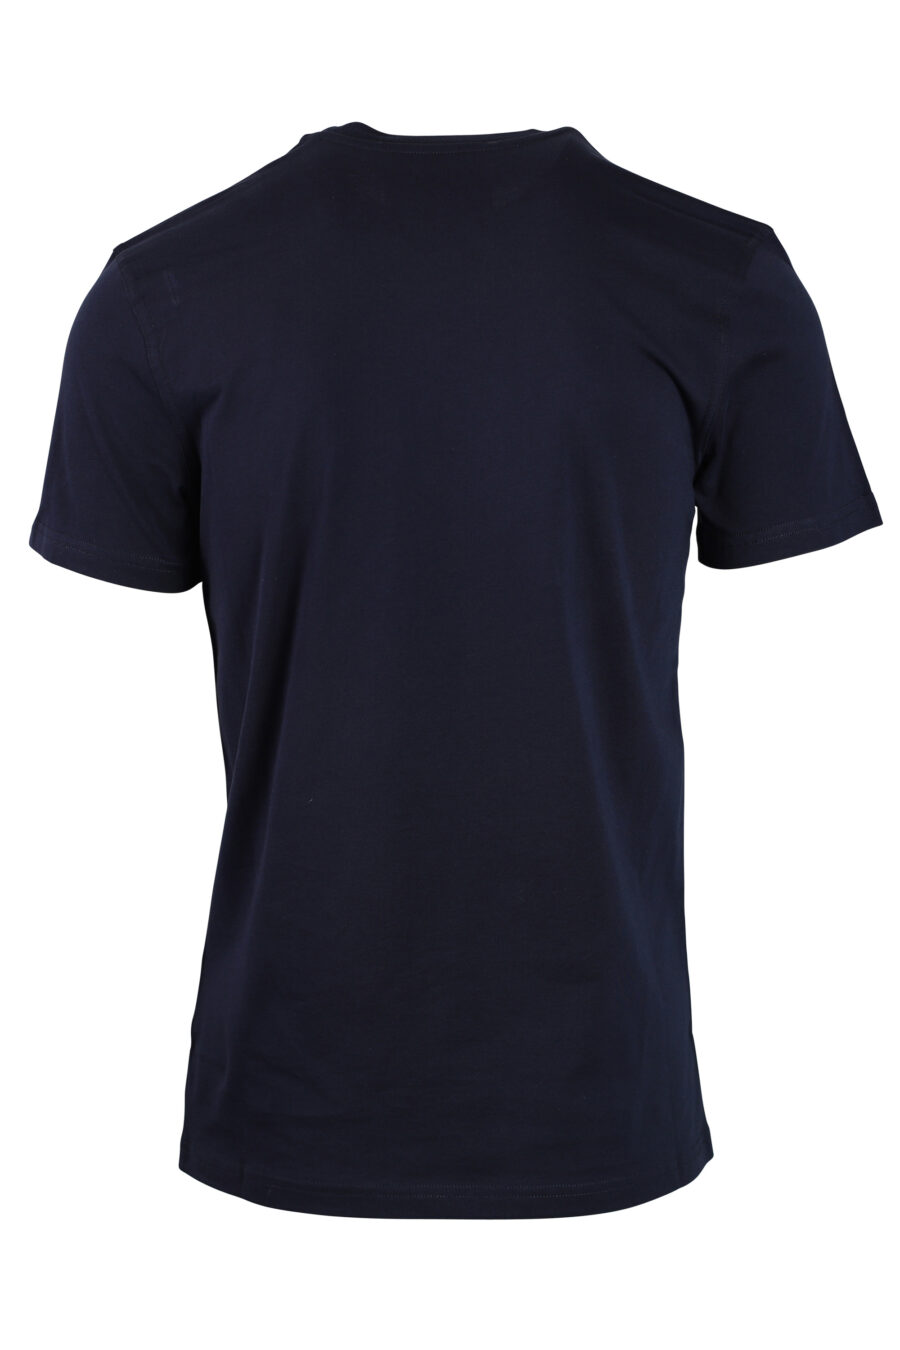 Camiseta azul oscura con maxilogo oso monocromático - 667112914566 2